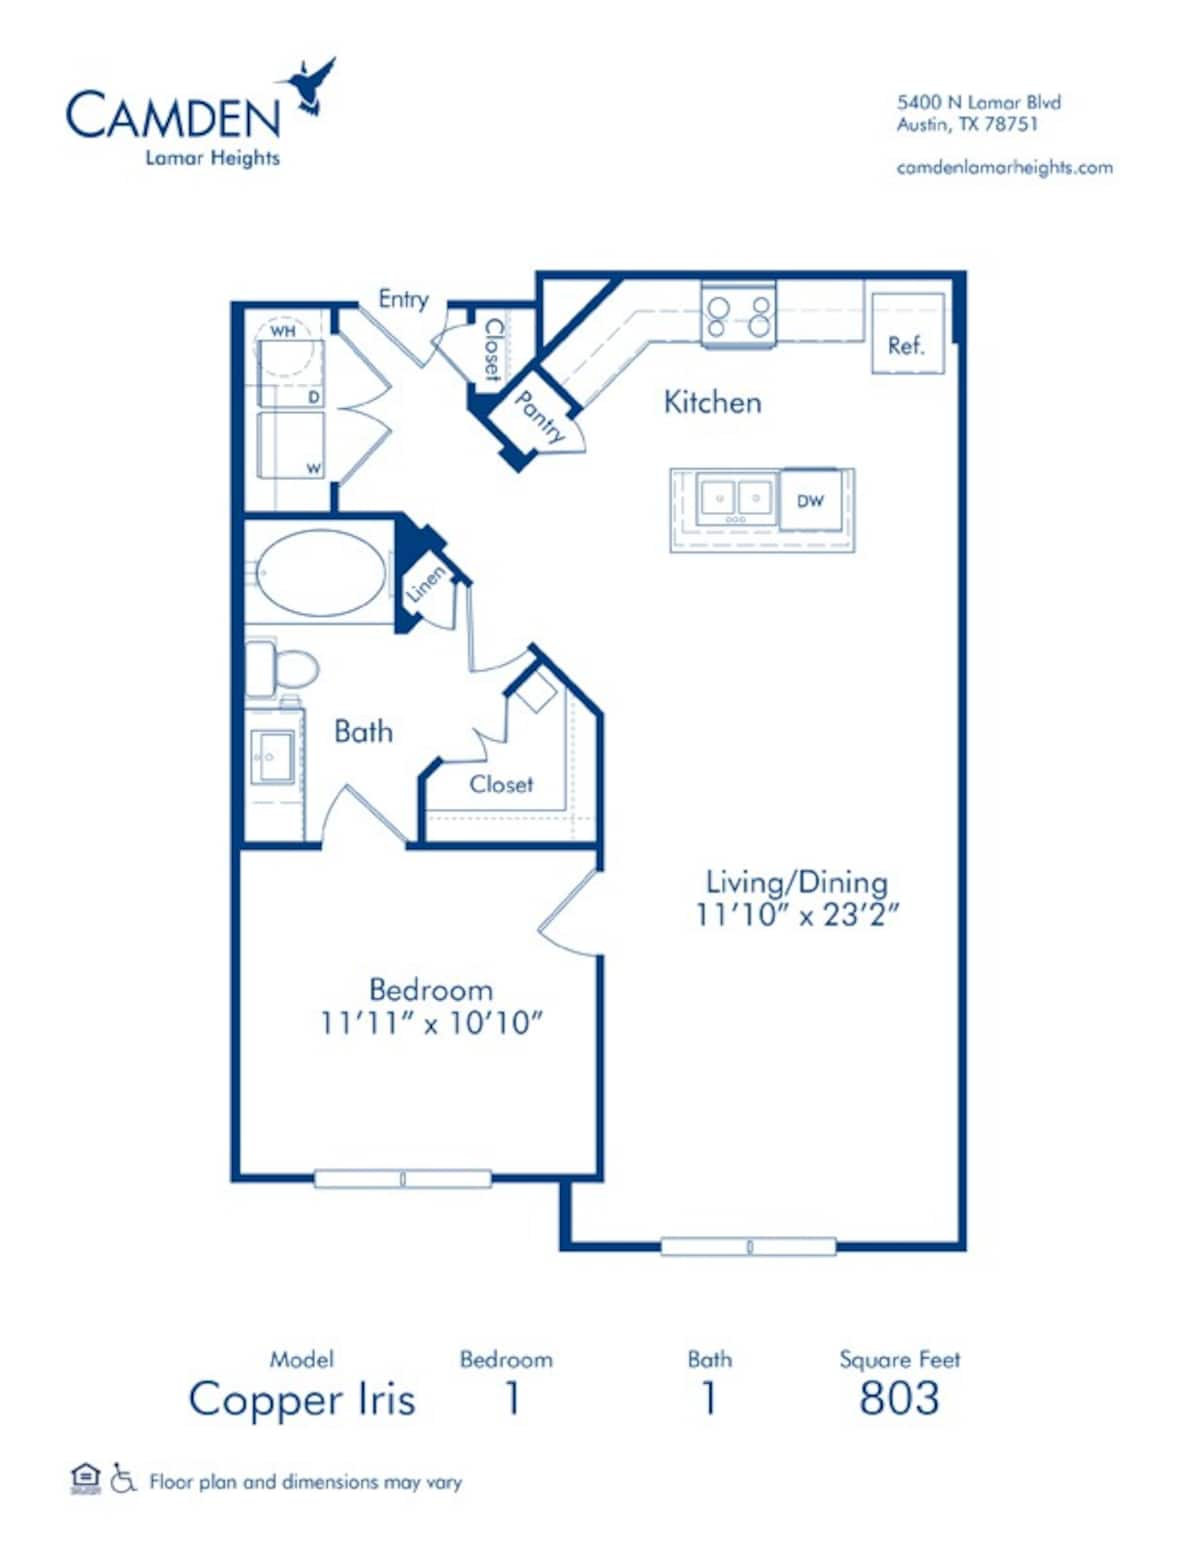 Floorplan diagram for Copper Iris, showing 1 bedroom